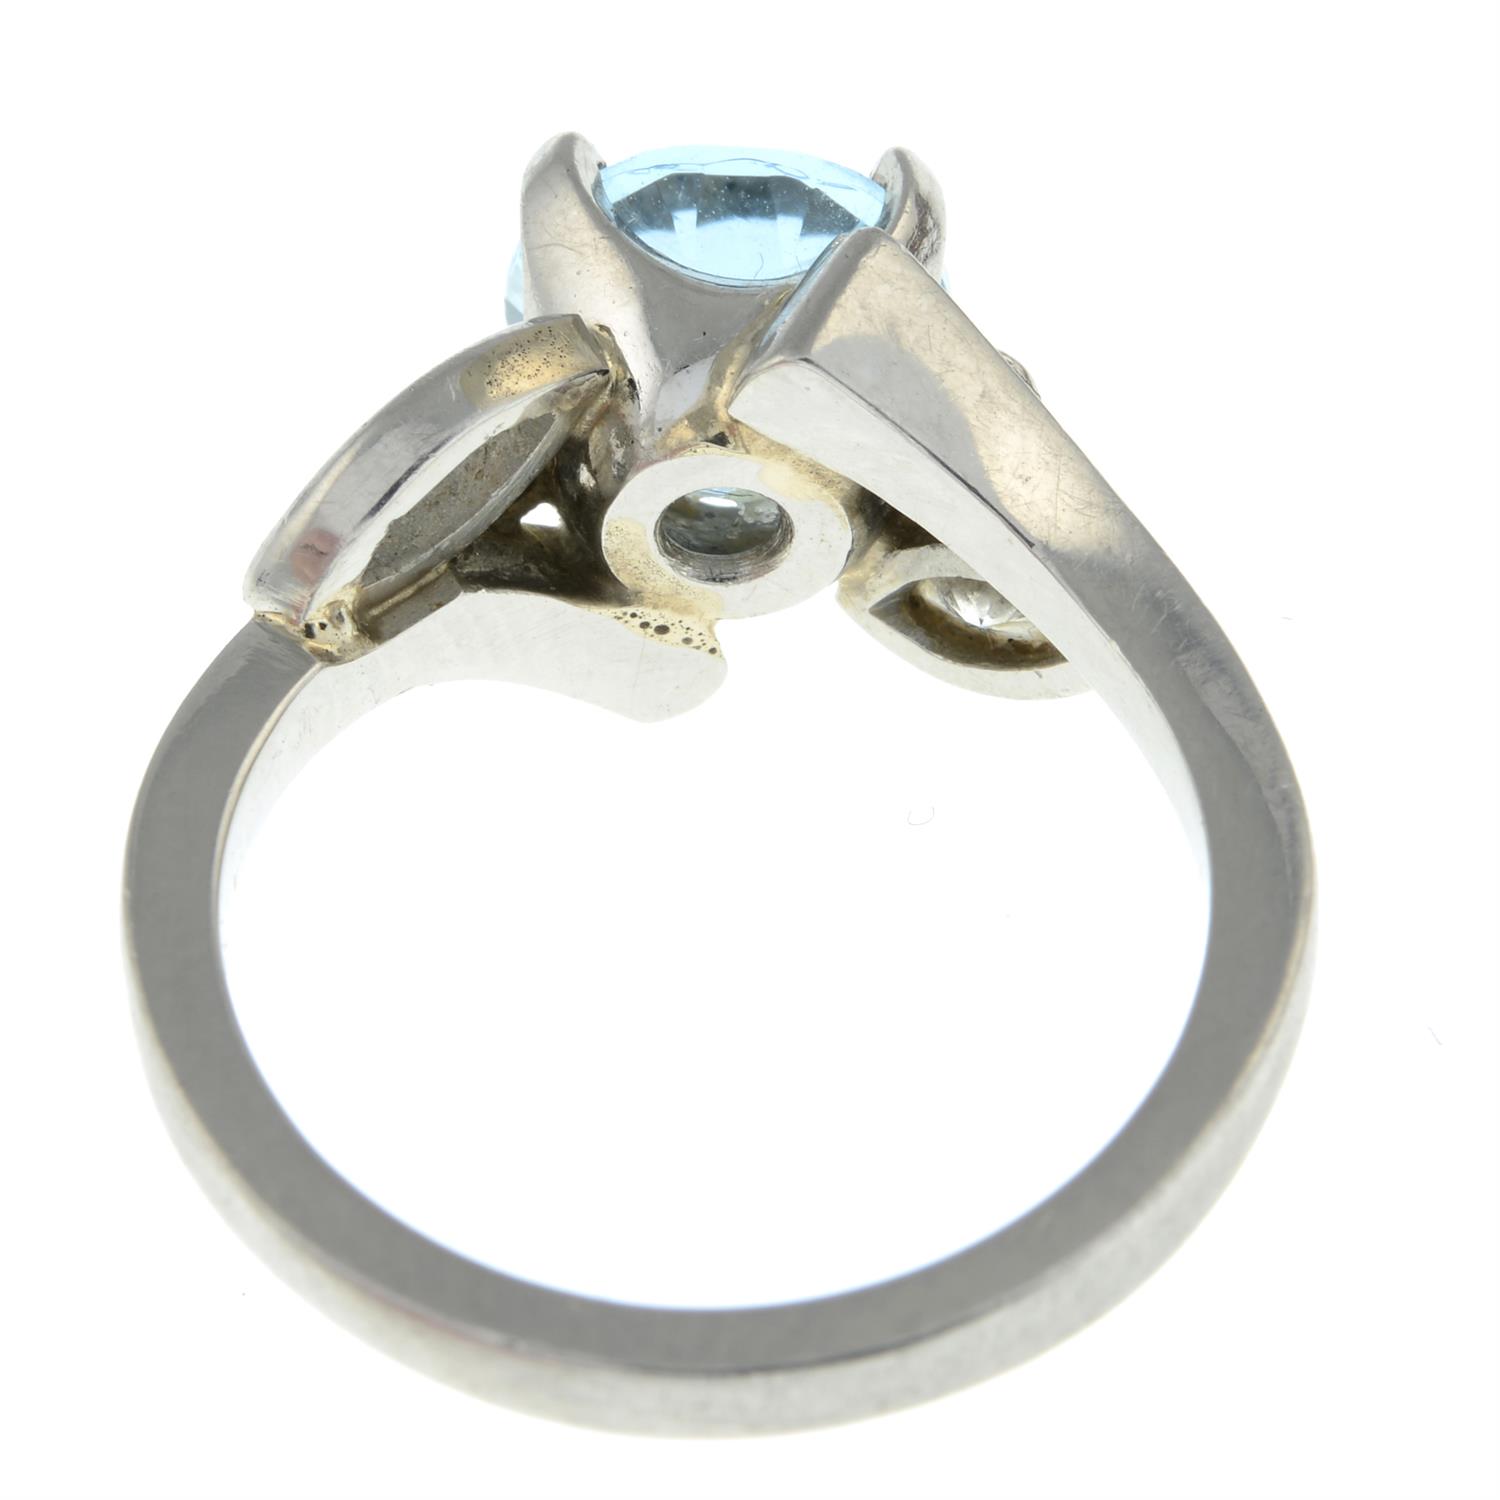 Platinum aquamarine & diamond ring - Image 2 of 3